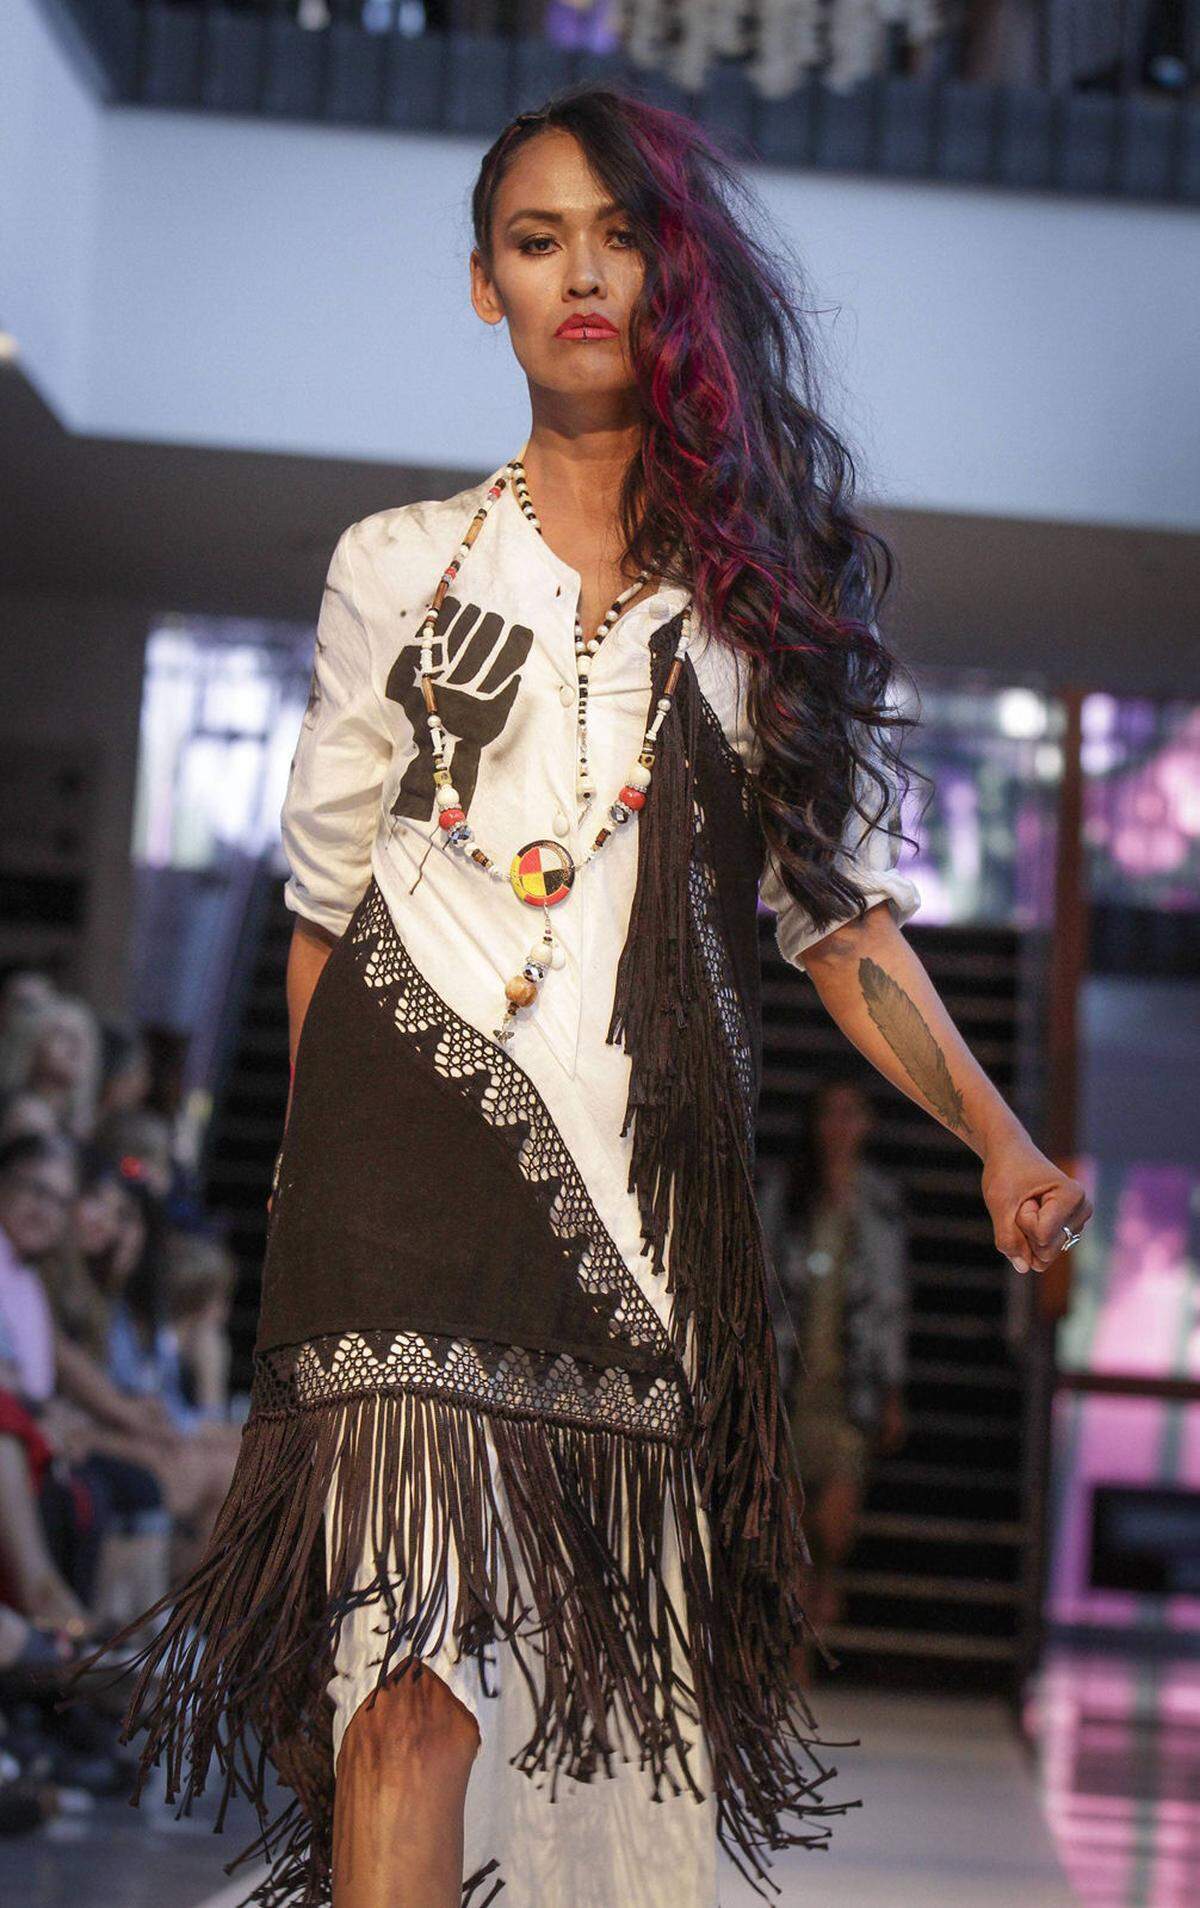 Mode, Musik und Künstler zeigen die vielfältige Kultur der nordamerikanischen Ureinwohner. Gezeigt wird nicht nur Streetwear, sondern auch umweltfreundliche Mode und Aborgine-Designs.